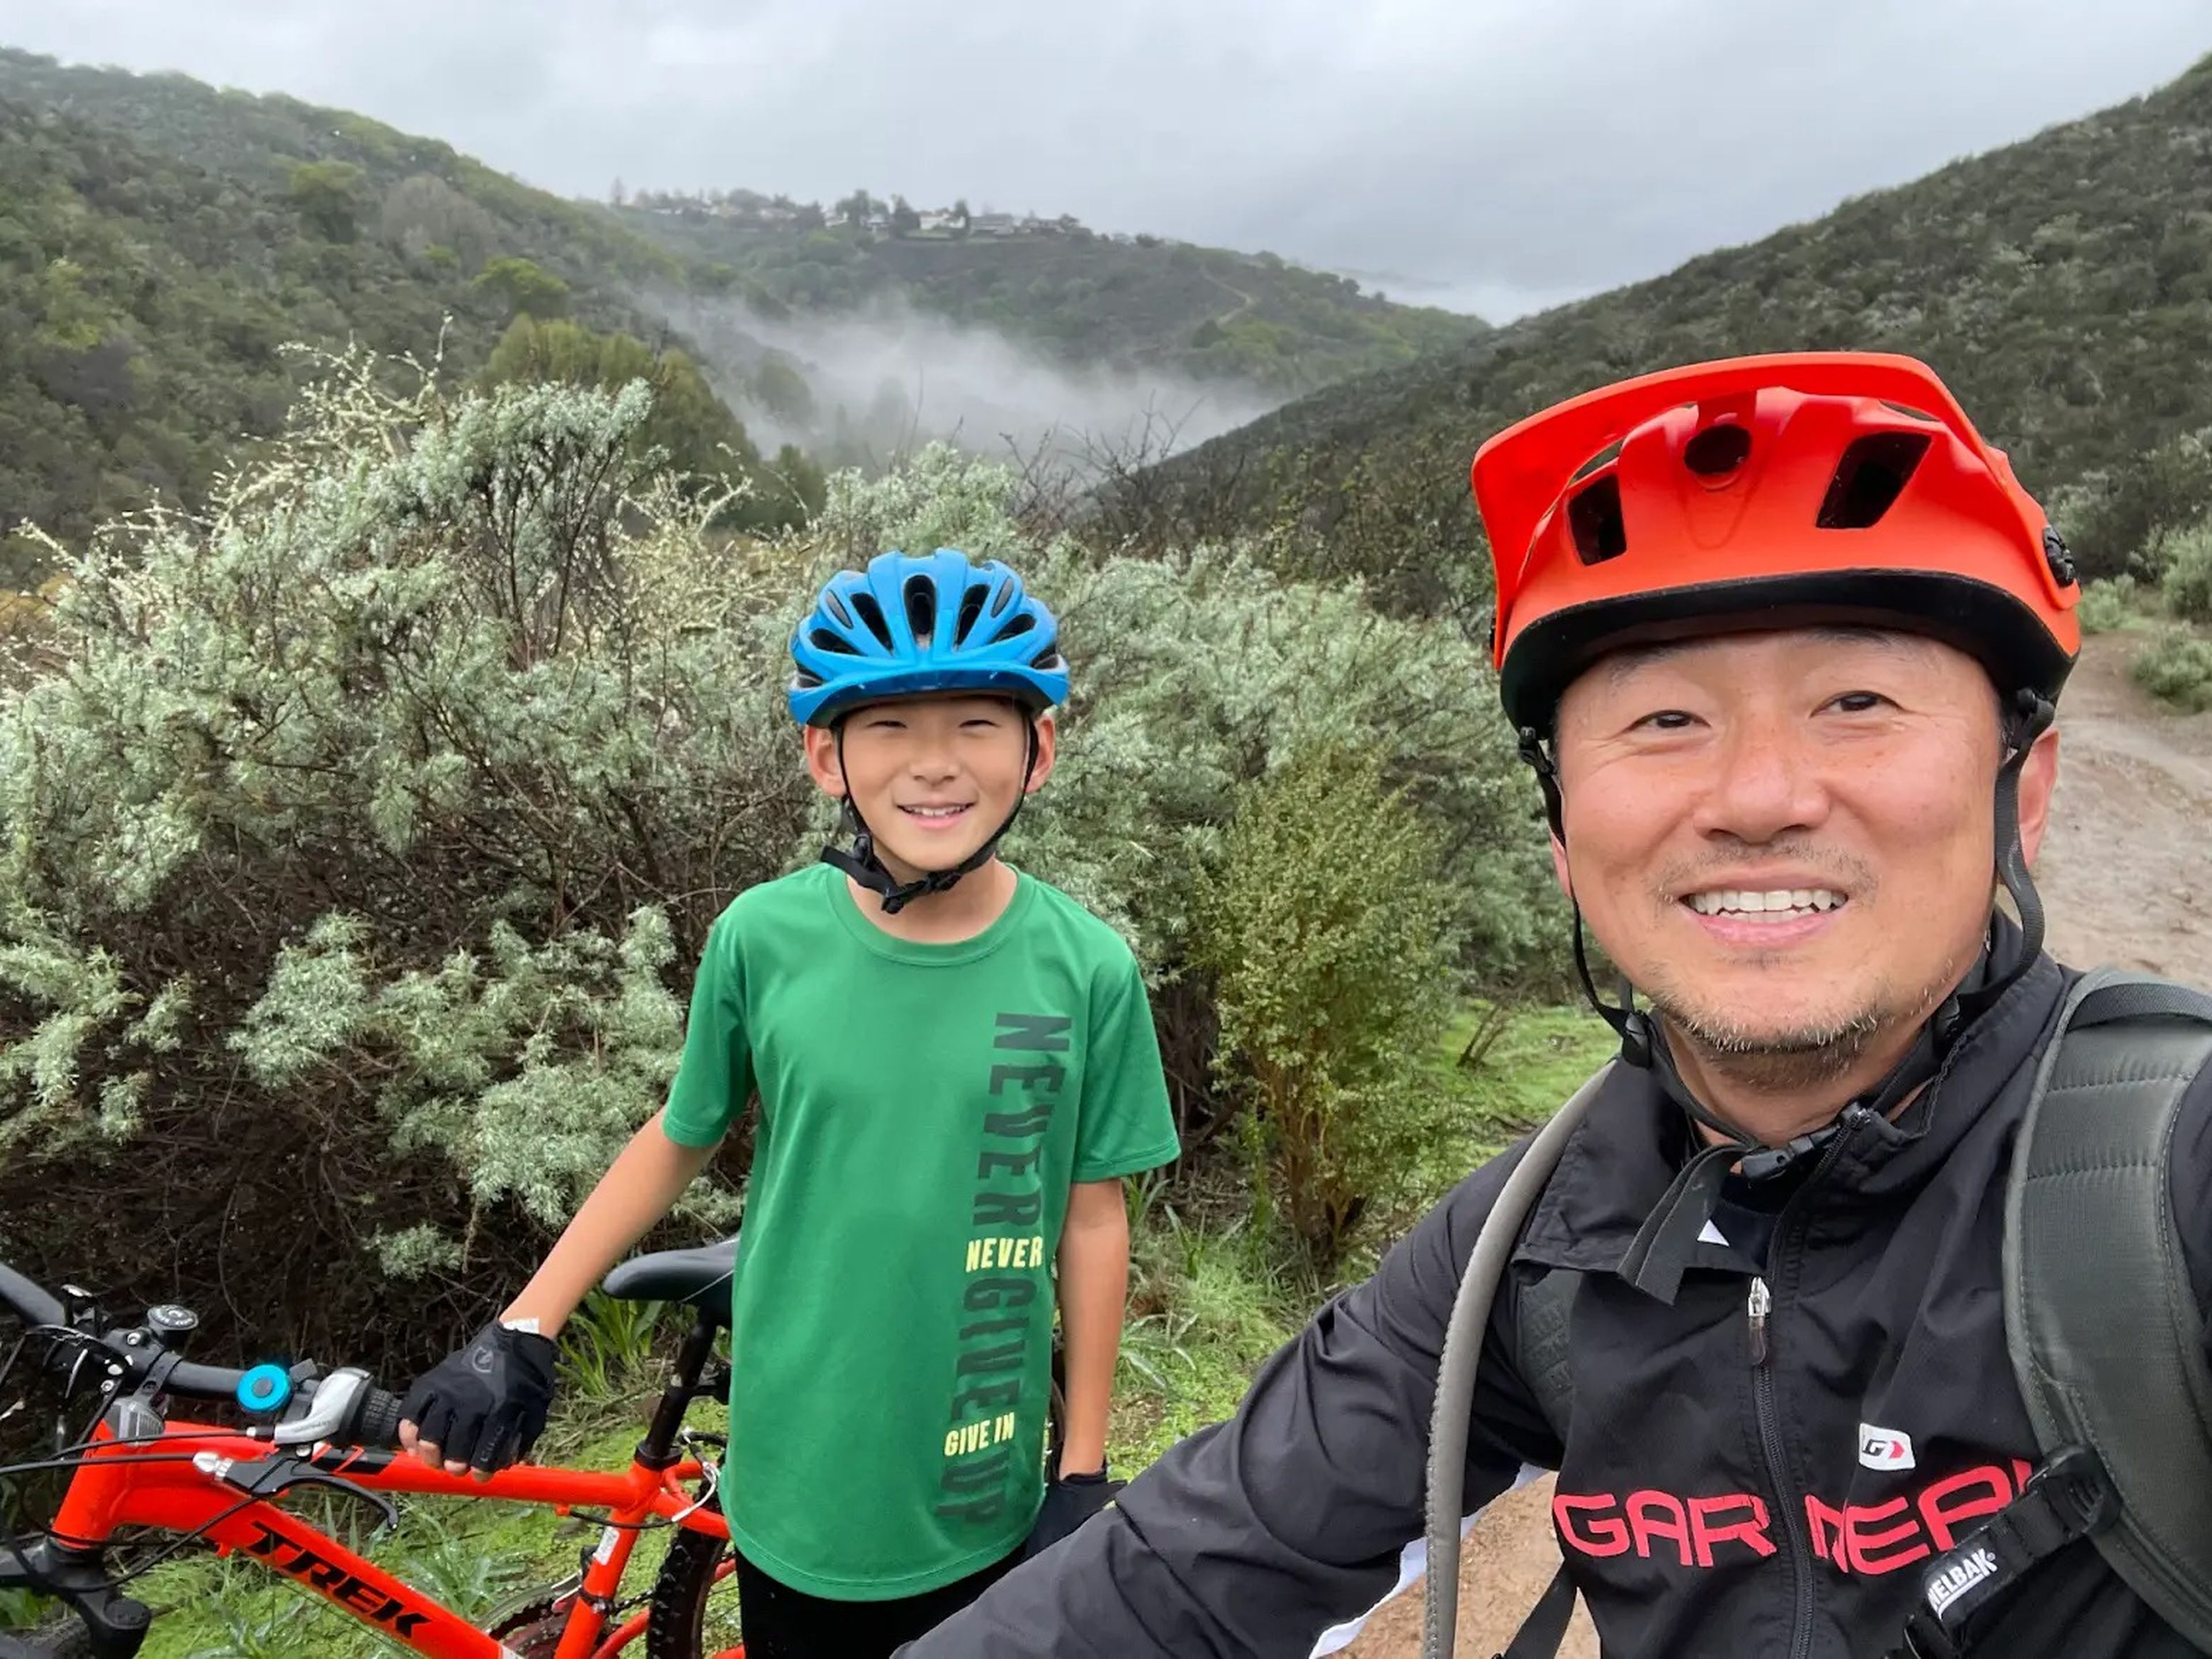 Sim disfruta llevando a su hijo de paseo con la bicicleta por la montaña.